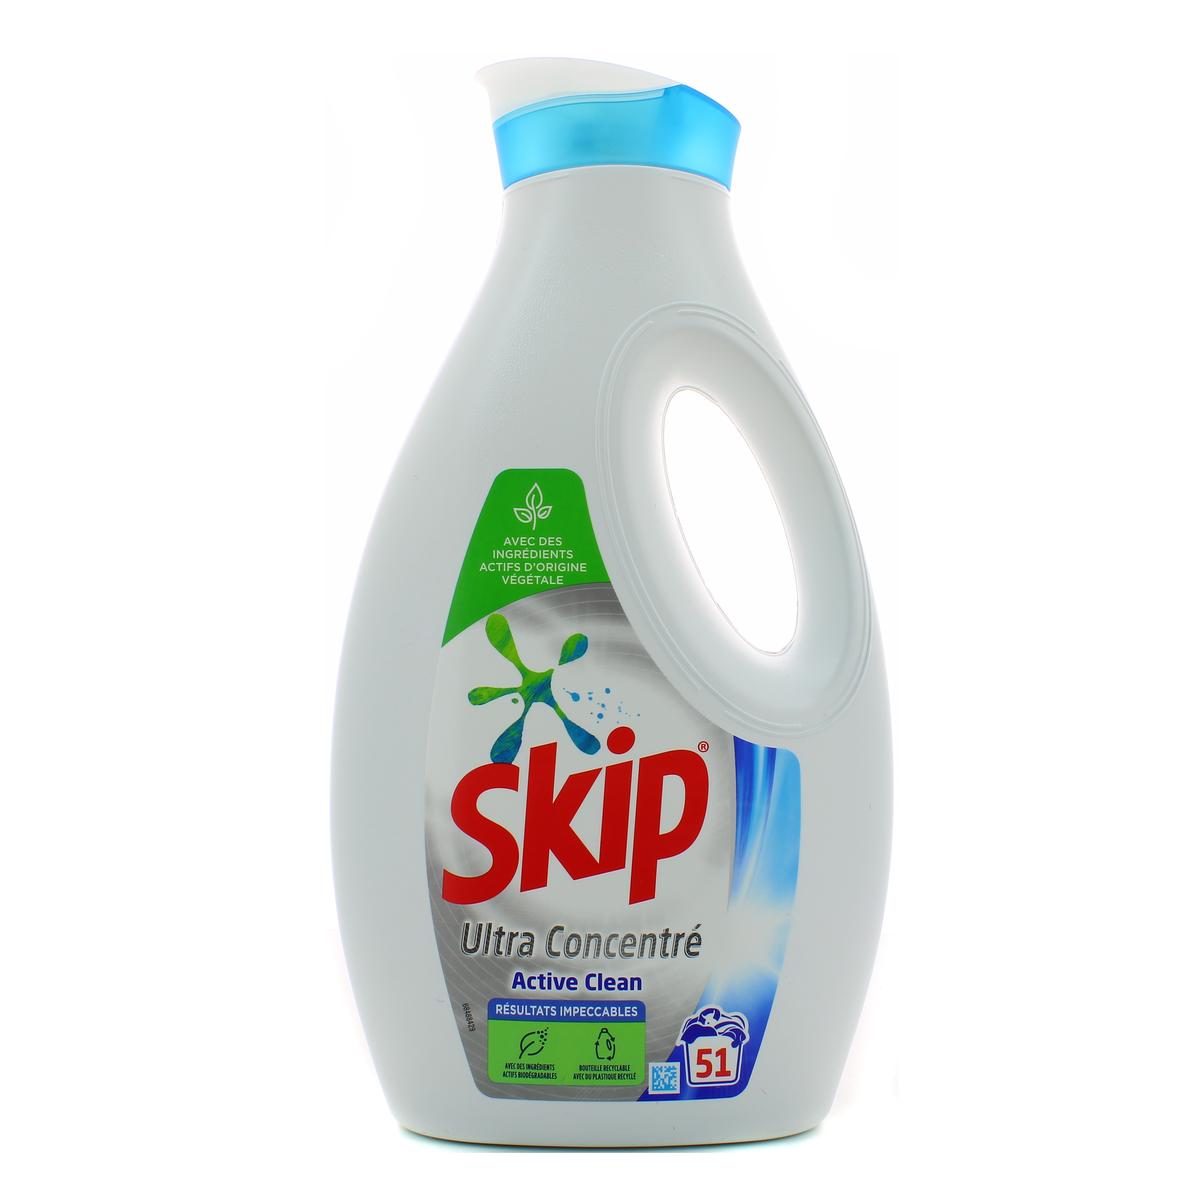 SKIP Skip Lessive liquide sensitive 36 lavages 1,8l 36 lavages 1